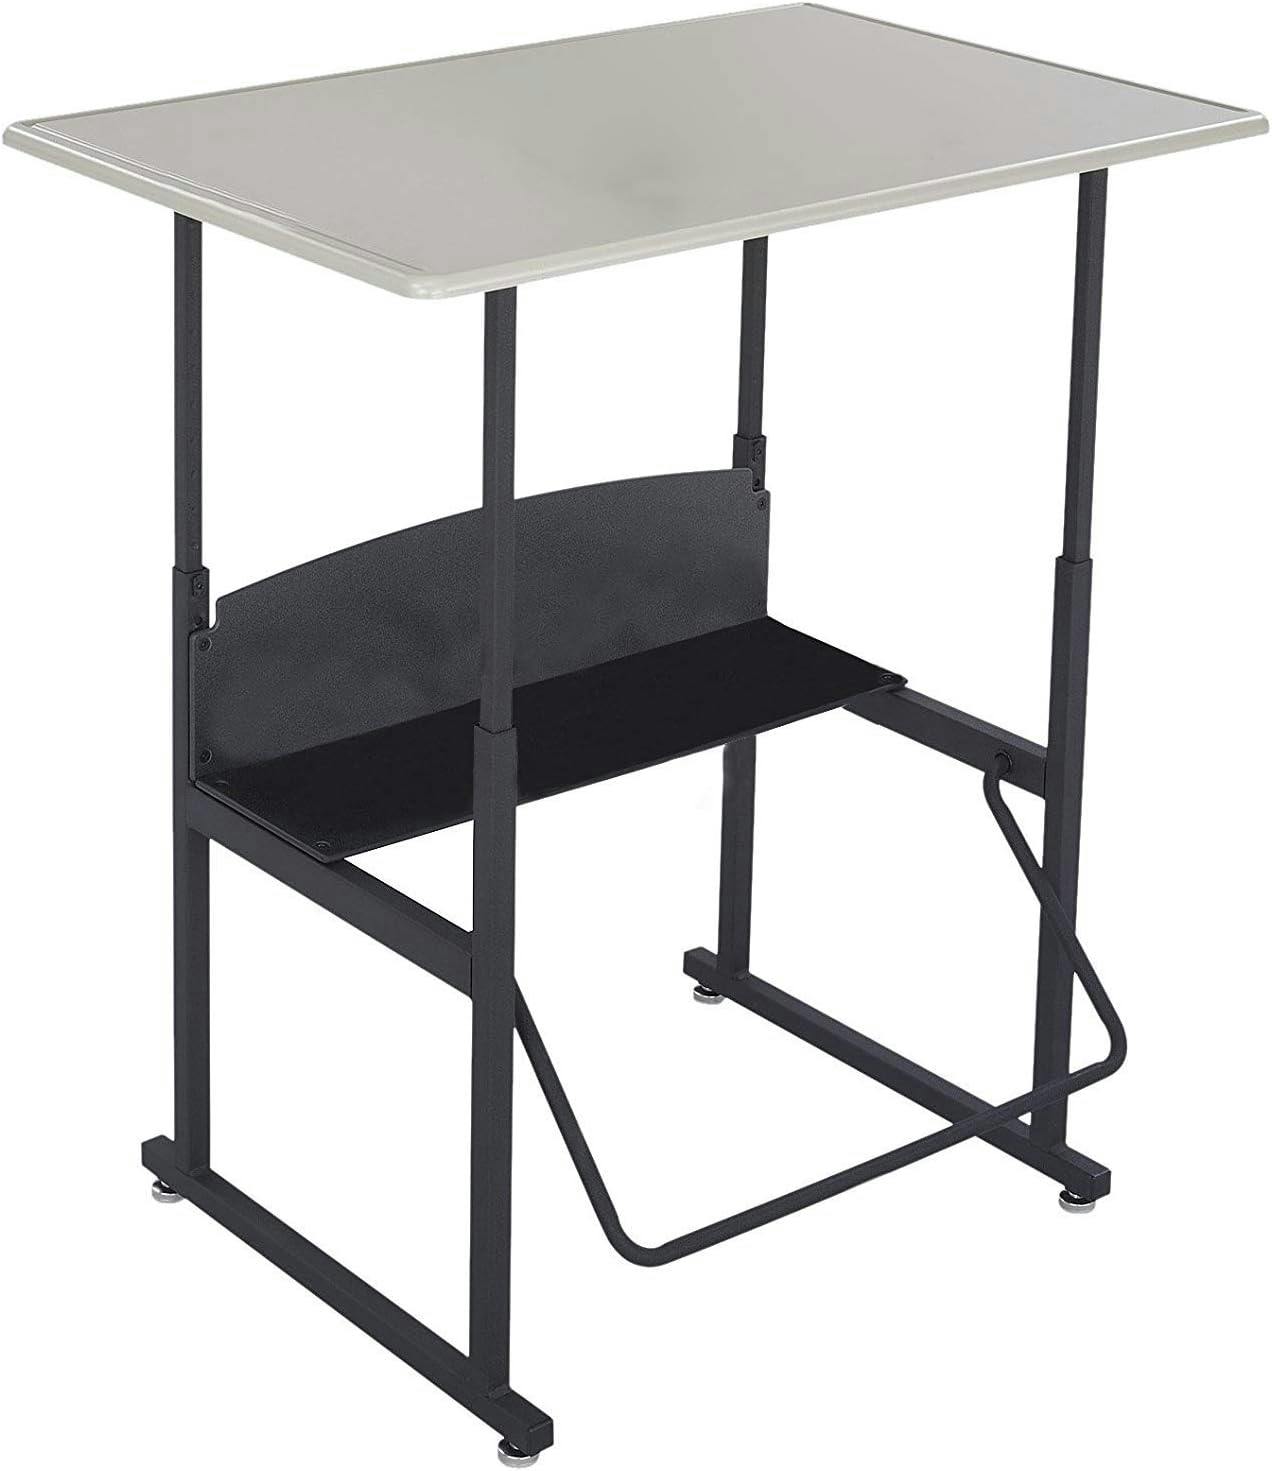 ErgoActive Black Steel Adjustable Height Standing Desk with Pendulum Footrest